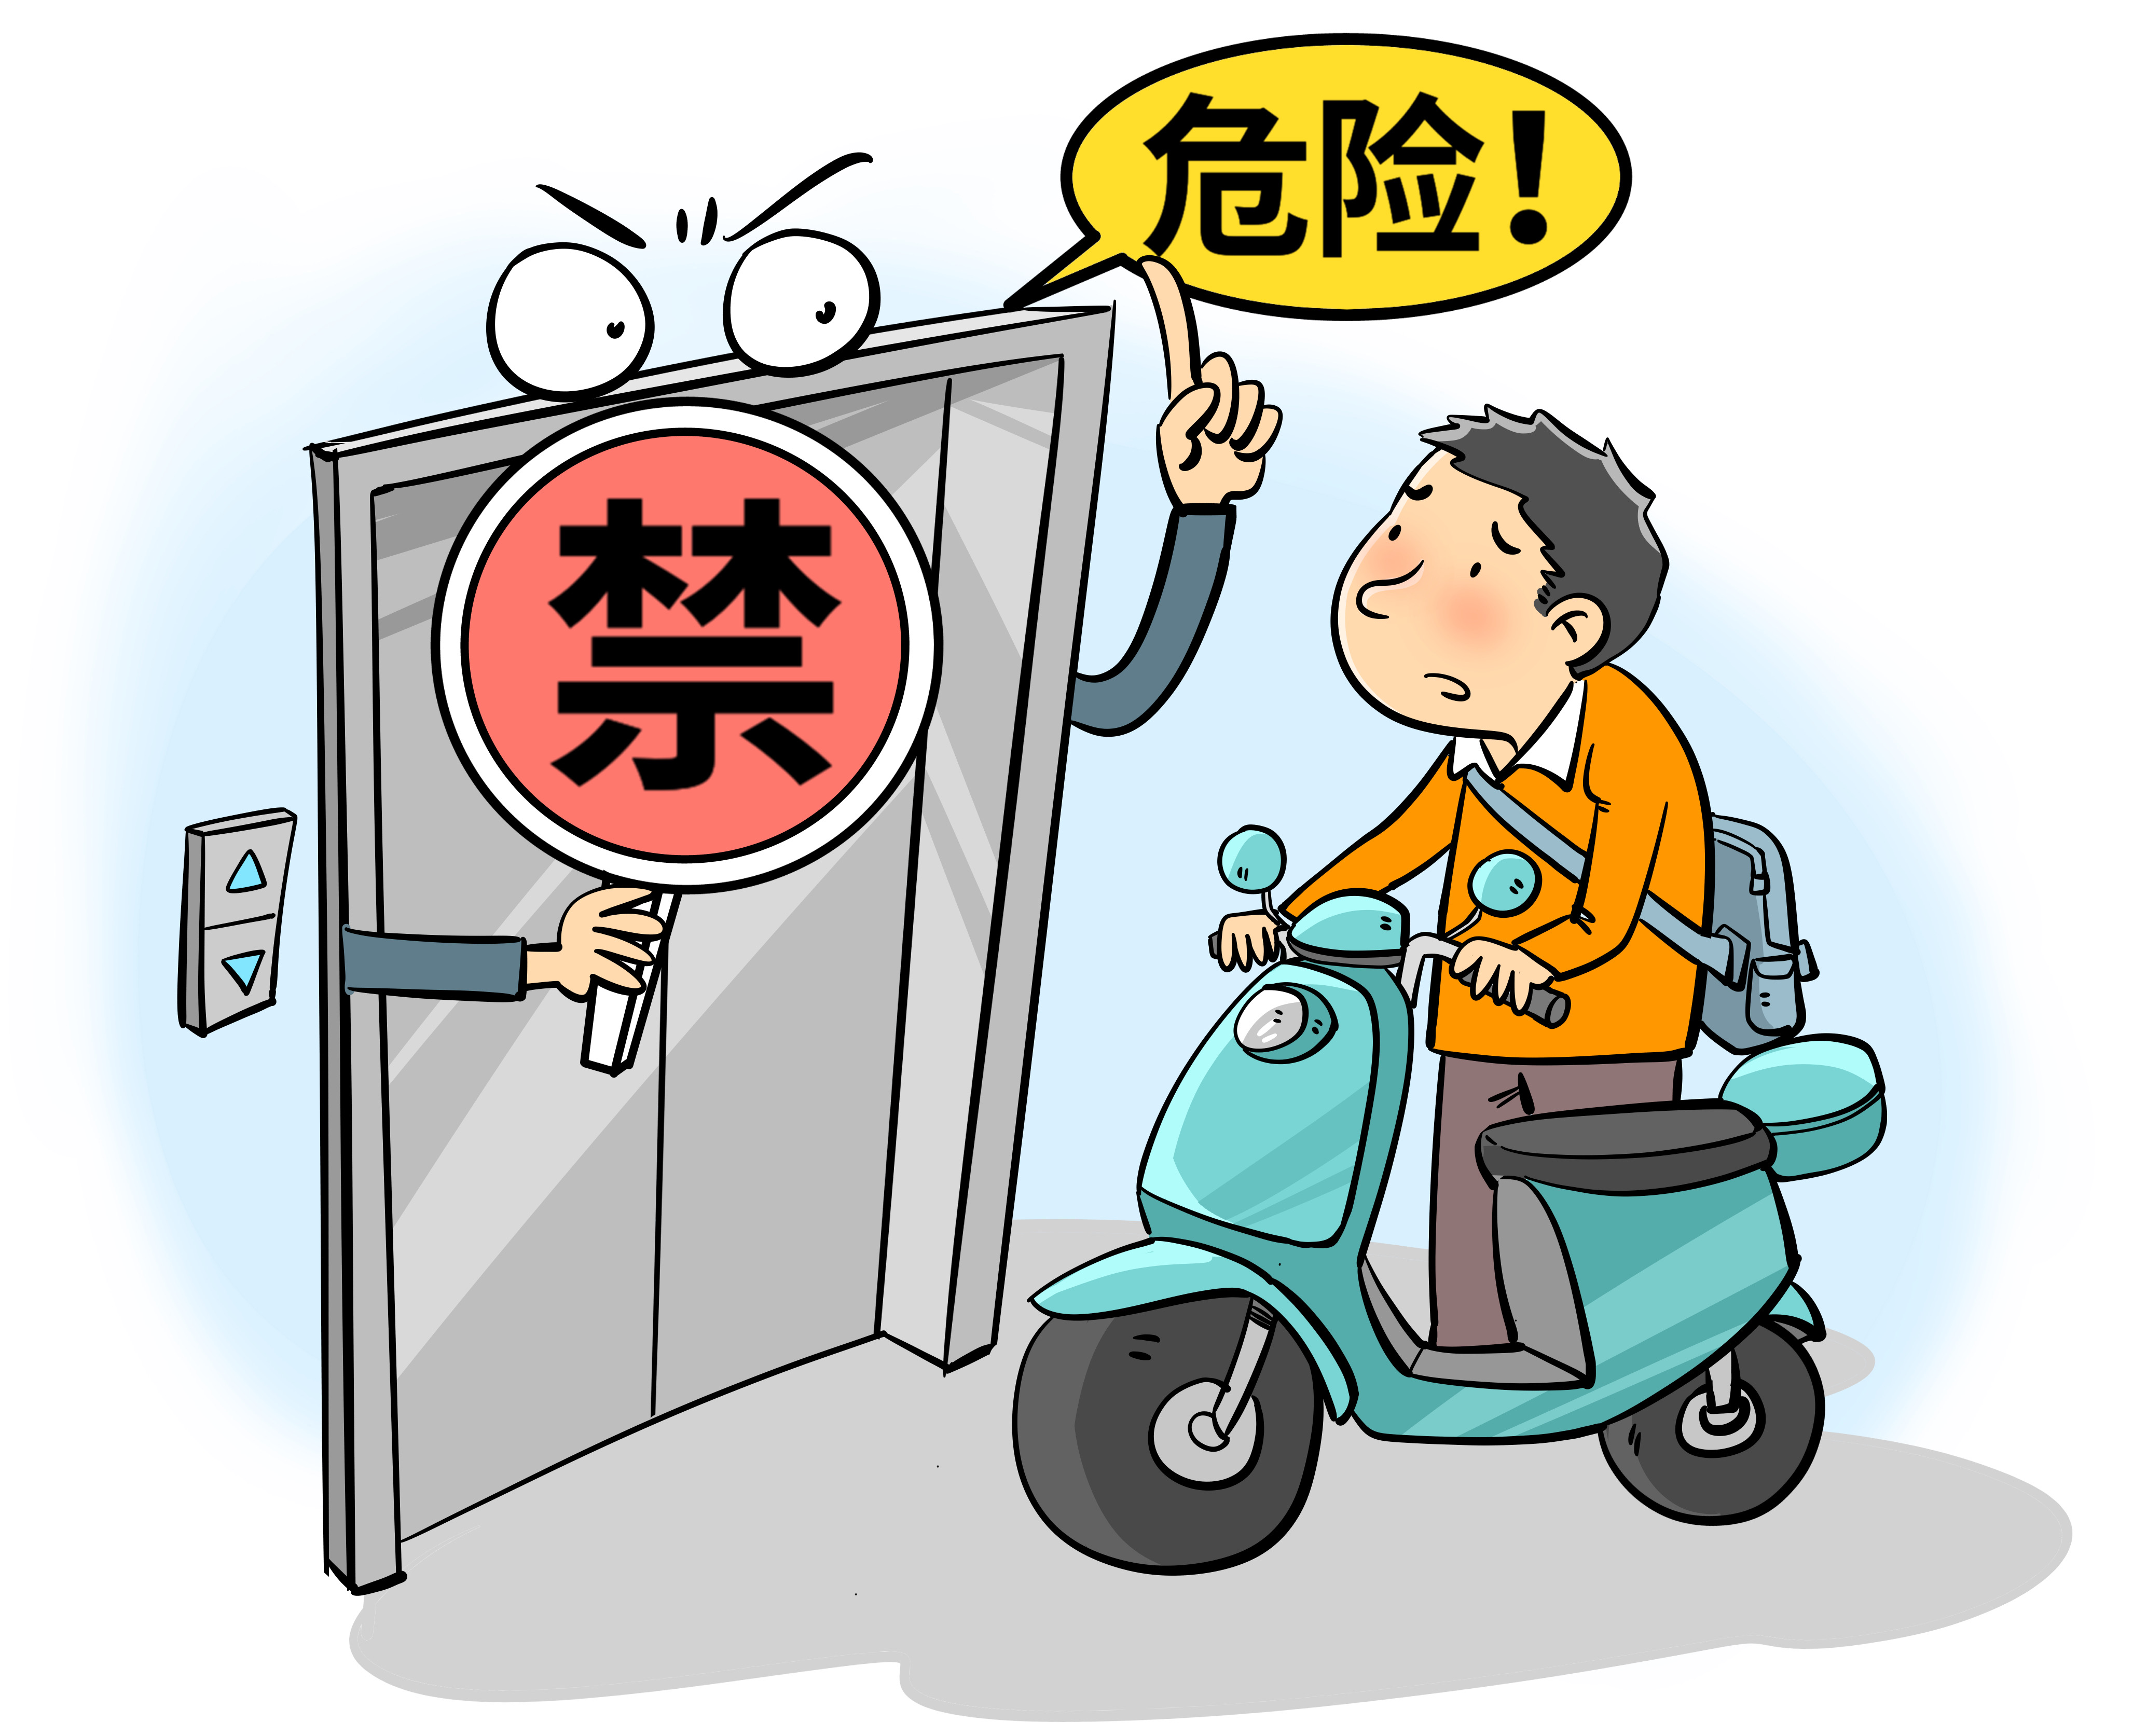 图源:视觉中国一直以来,电动自行车事故多发,电动自行车安全问题引发